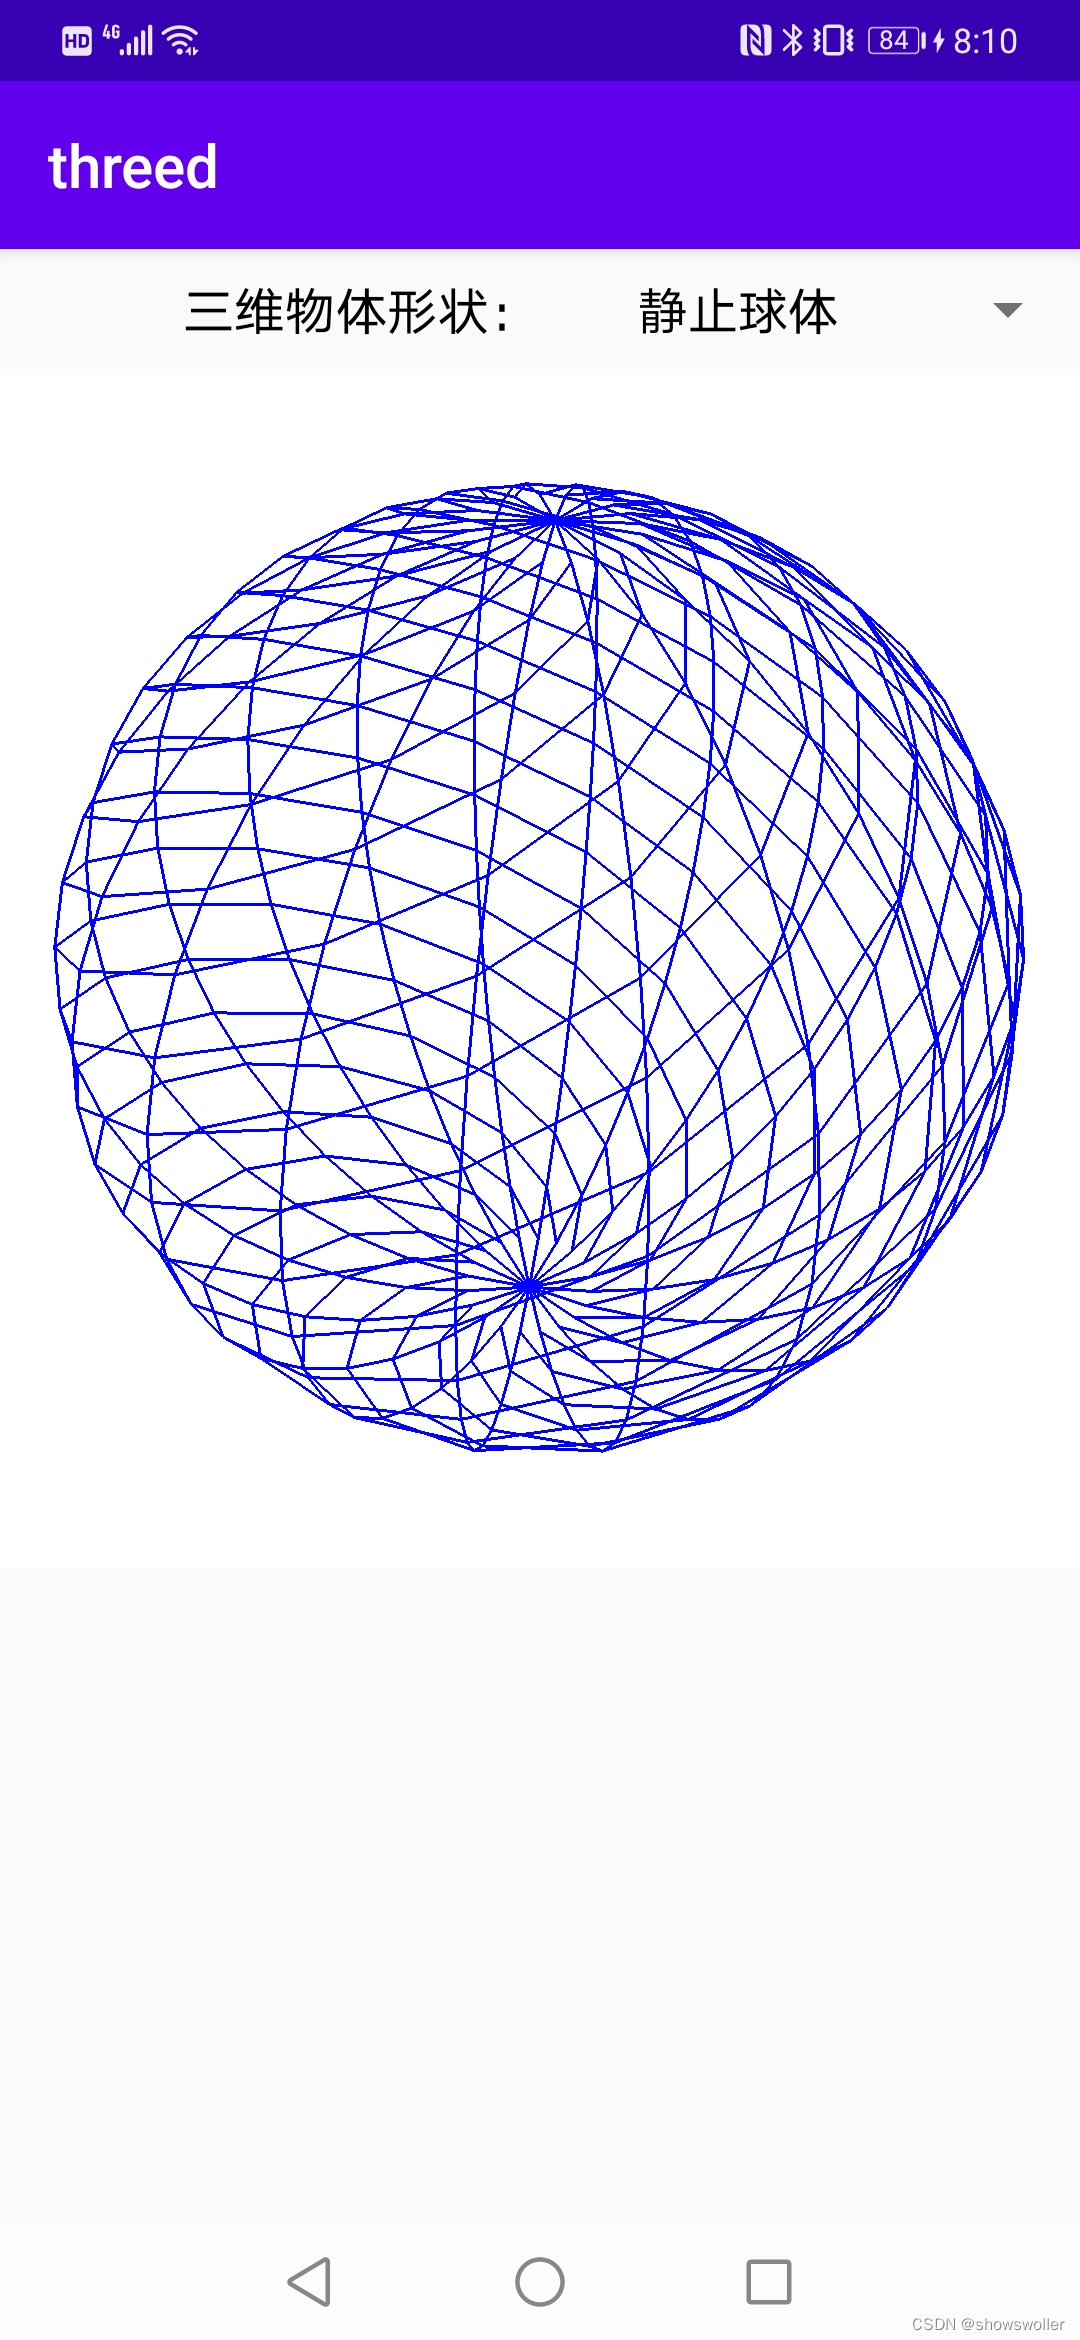 【Android App】勾勒出三维立方体和球体以及它们的转动图形讲解及实战（附源码和演示视频 超详细）